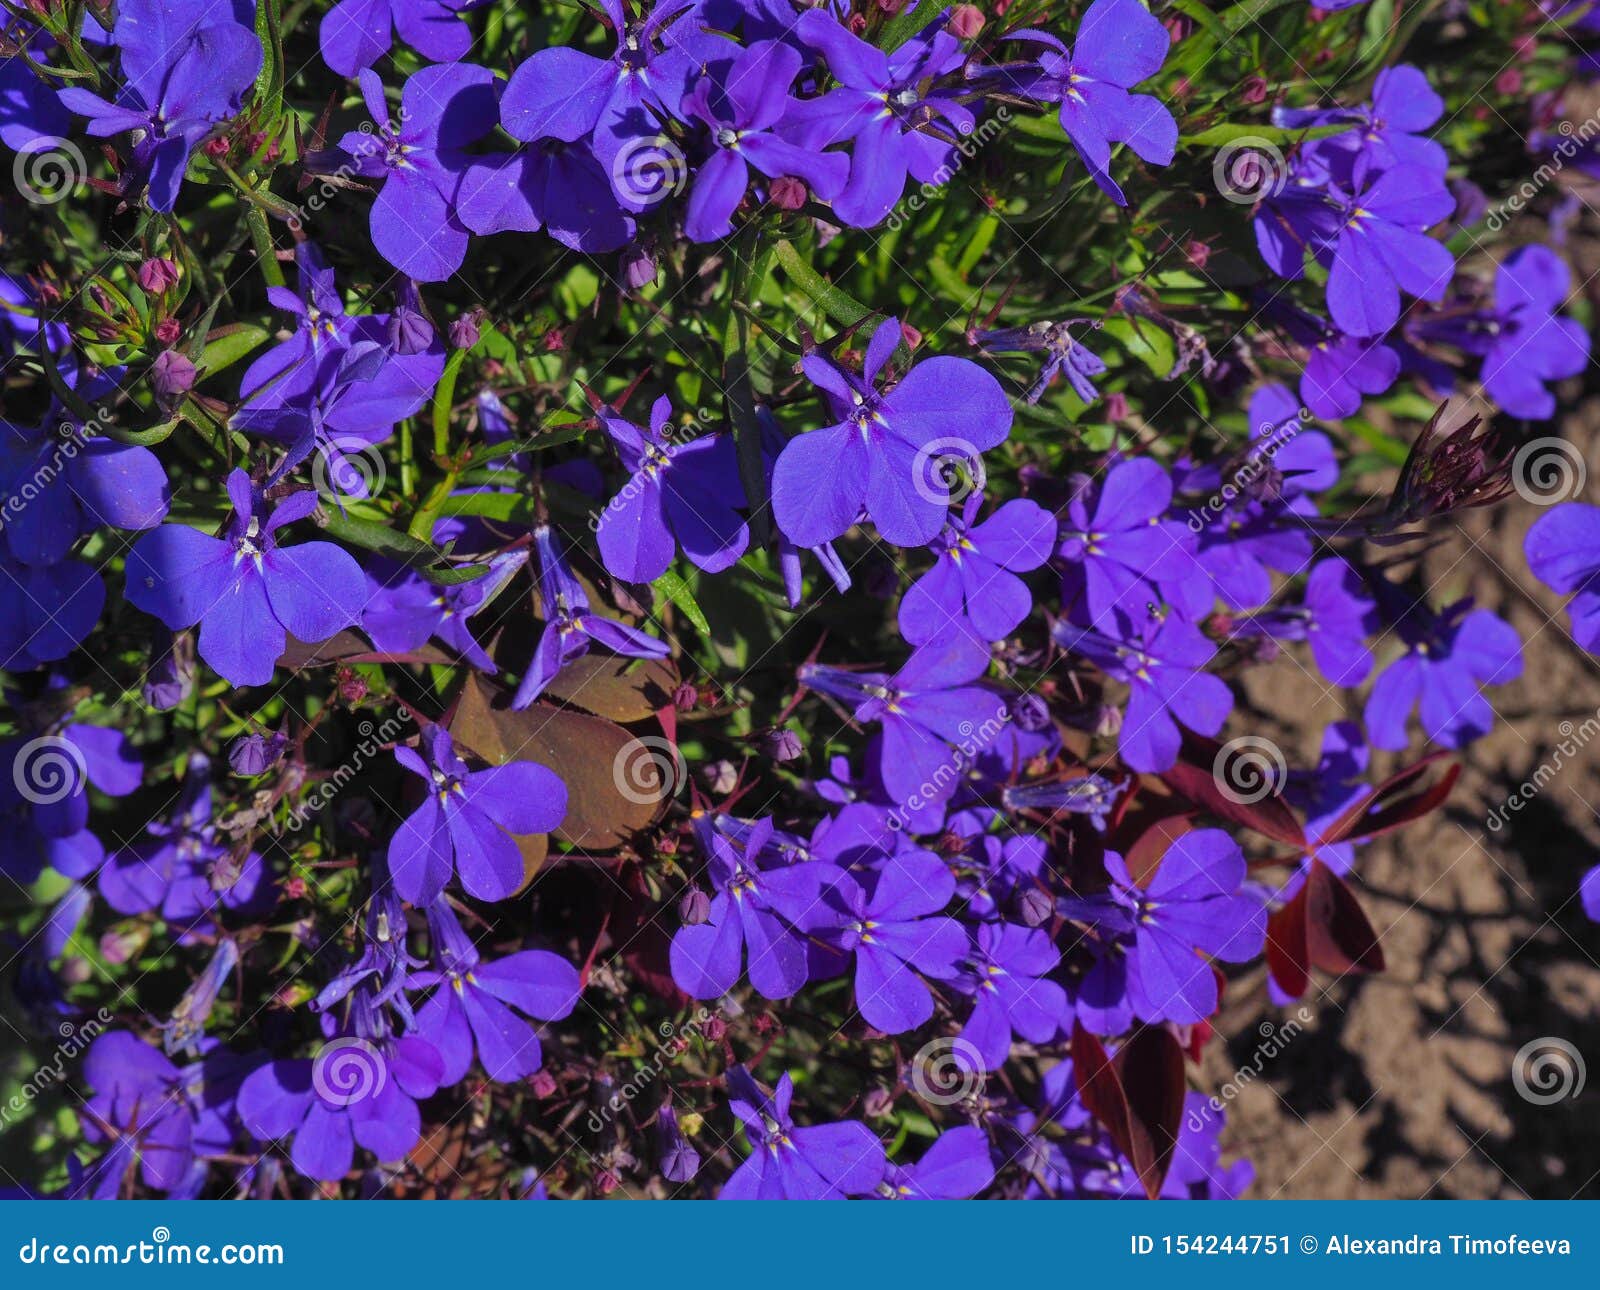 Blue Trailing Lobelia Flowers Close Uo Shot Stock Image - Image of ...